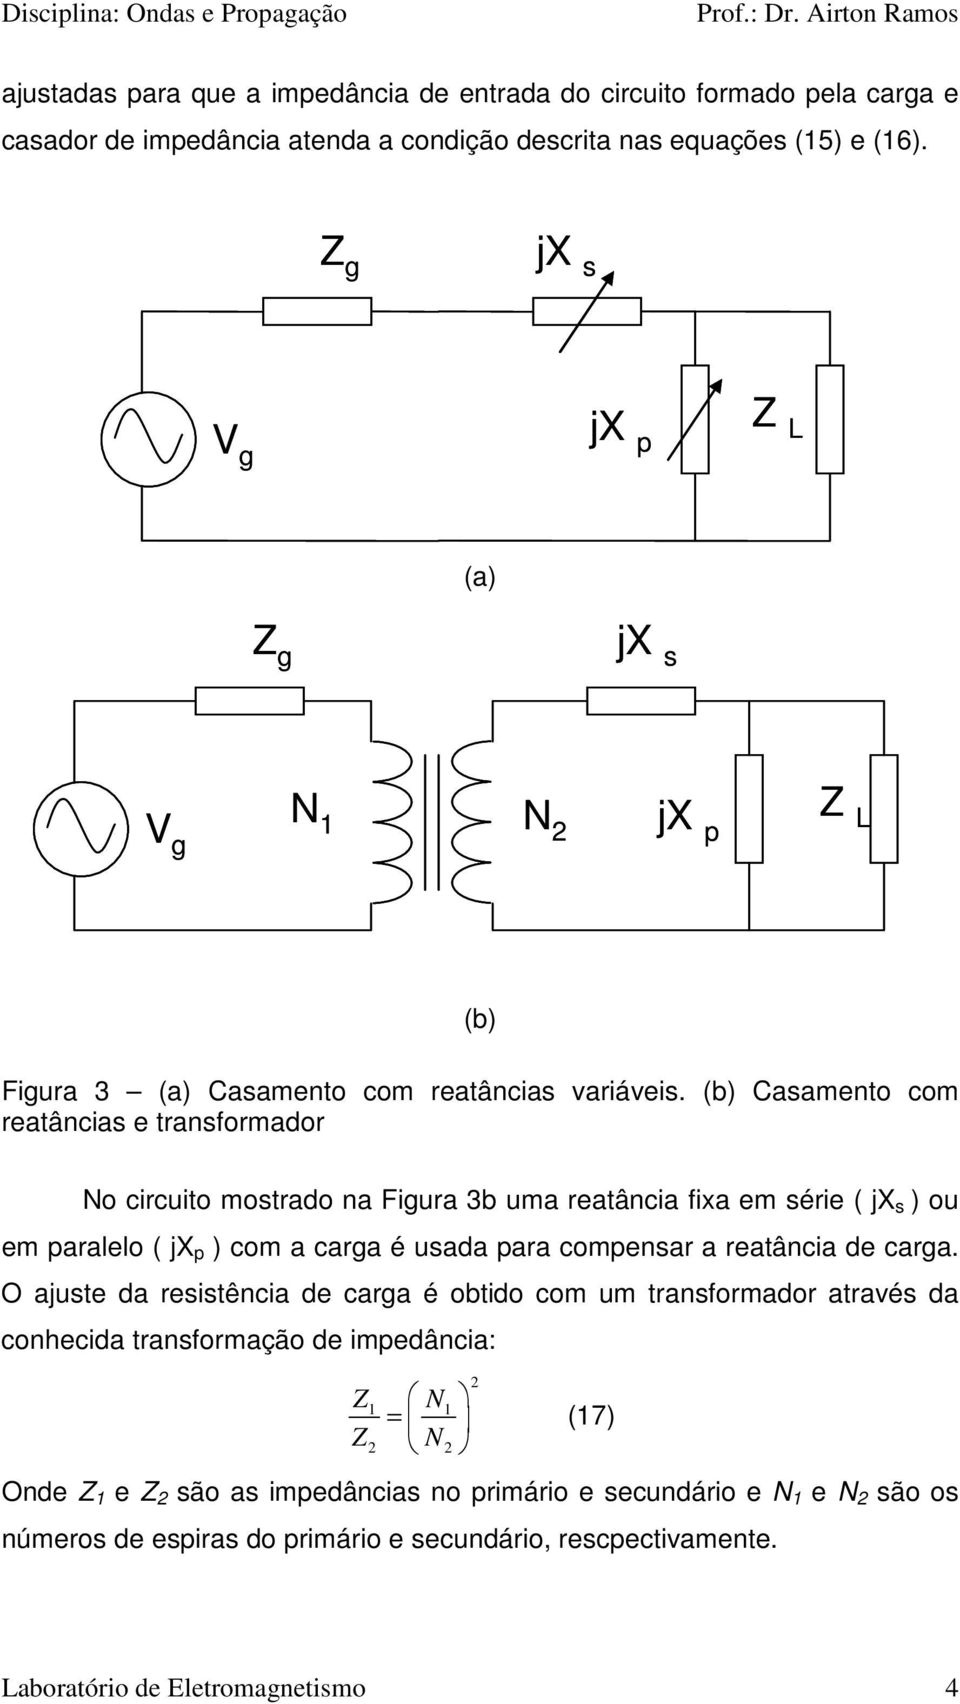 (b) Casamento com reatâncias e transformador No circuito mostrado na Fiura 3b uma reatância fixa em série ( jx s ) ou em paralelo ( jx p ) com a cara é usada para compensar a reatância de